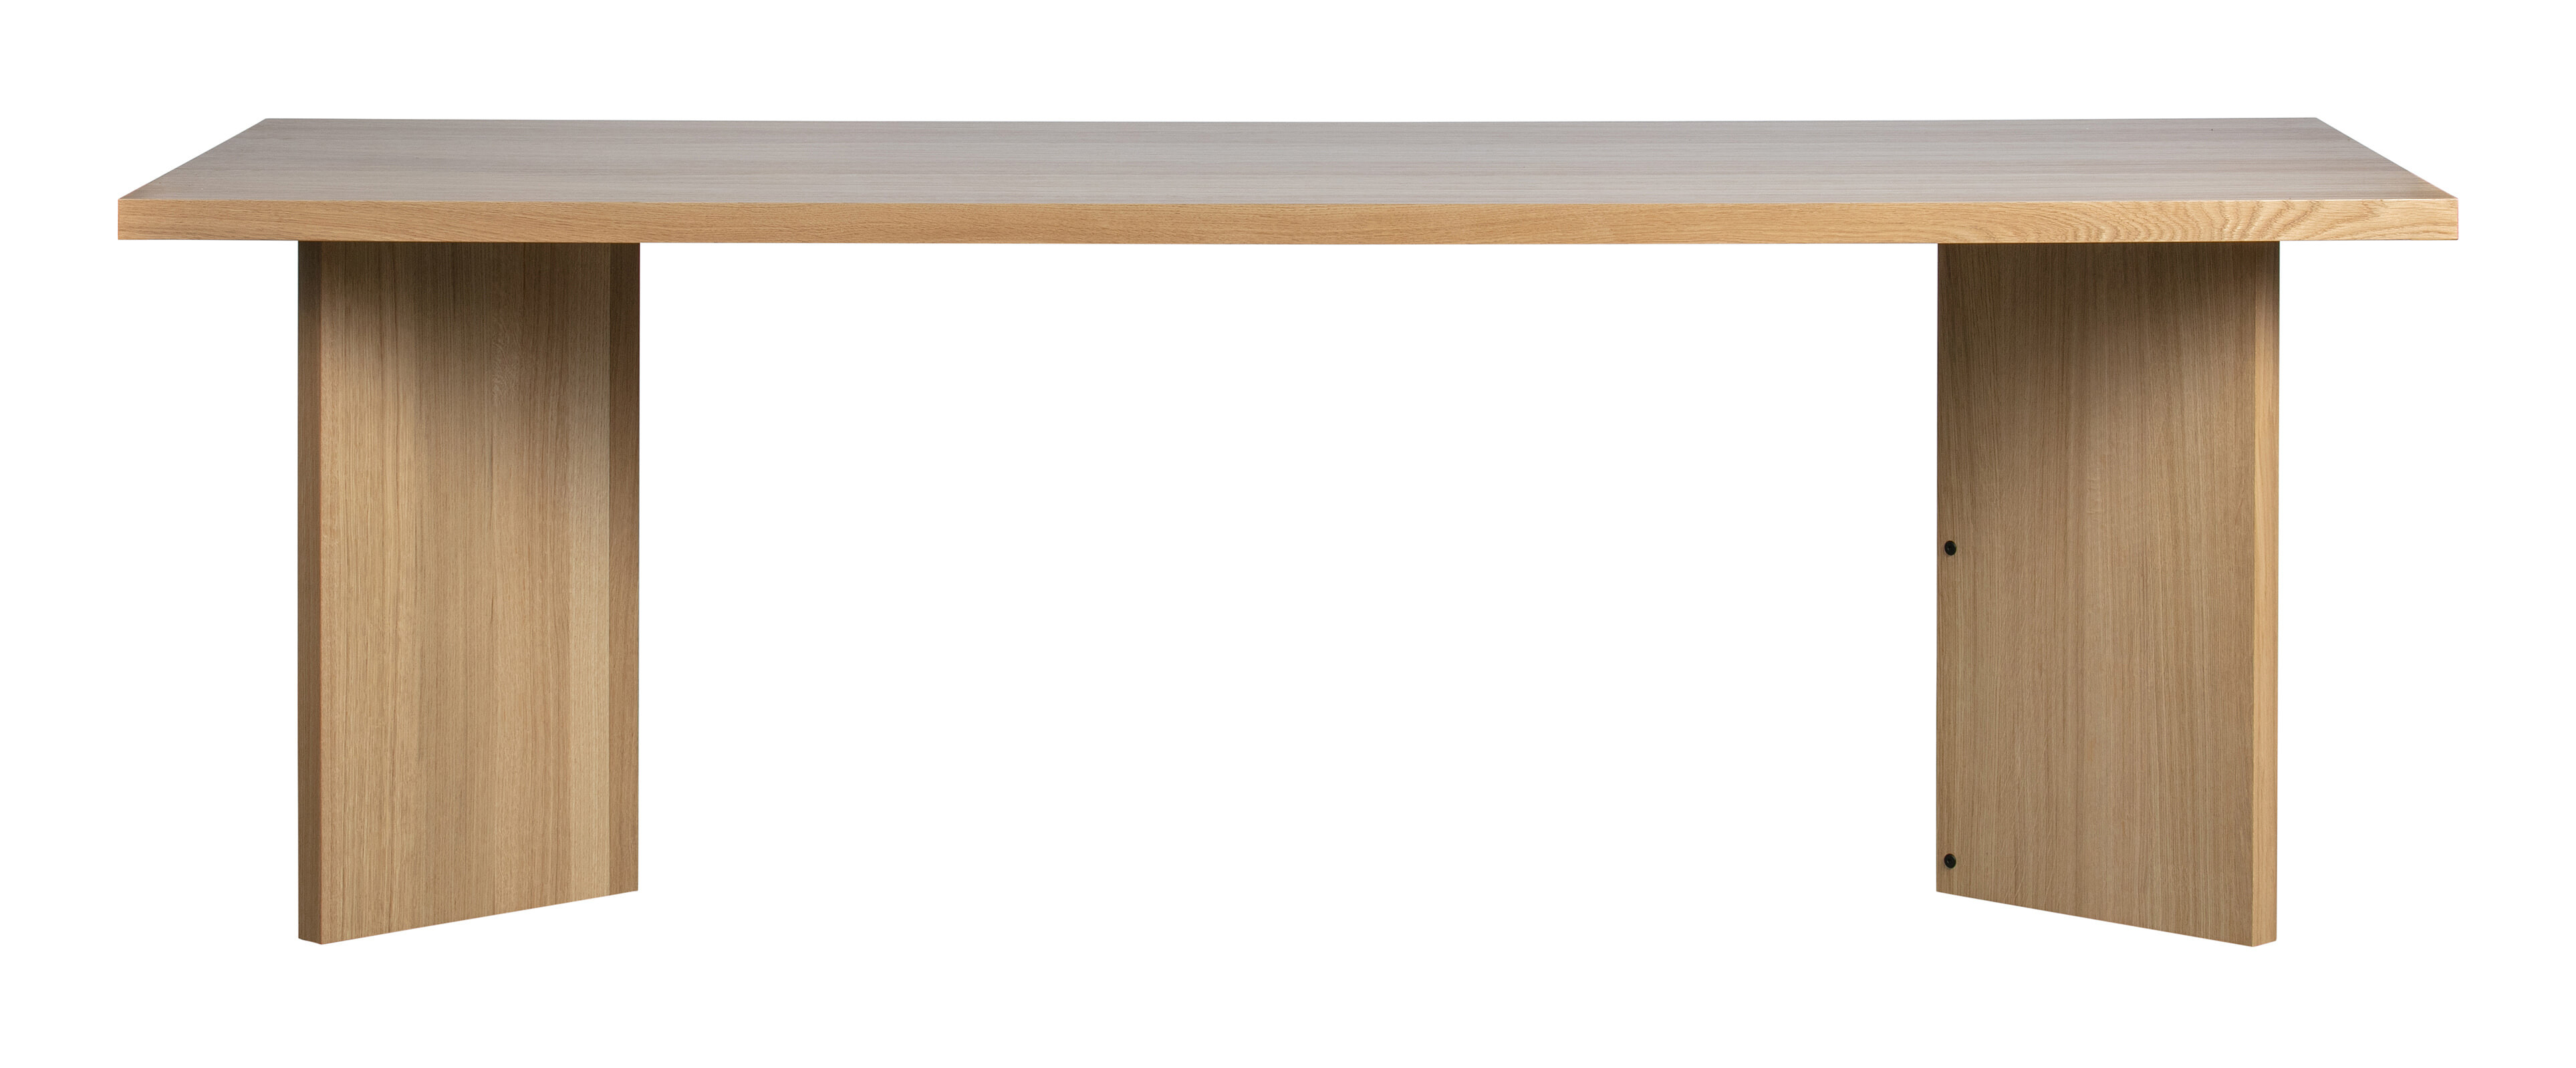 vtwonen Eettafel 'Angle' 220 x 90cm, kleur Eiken